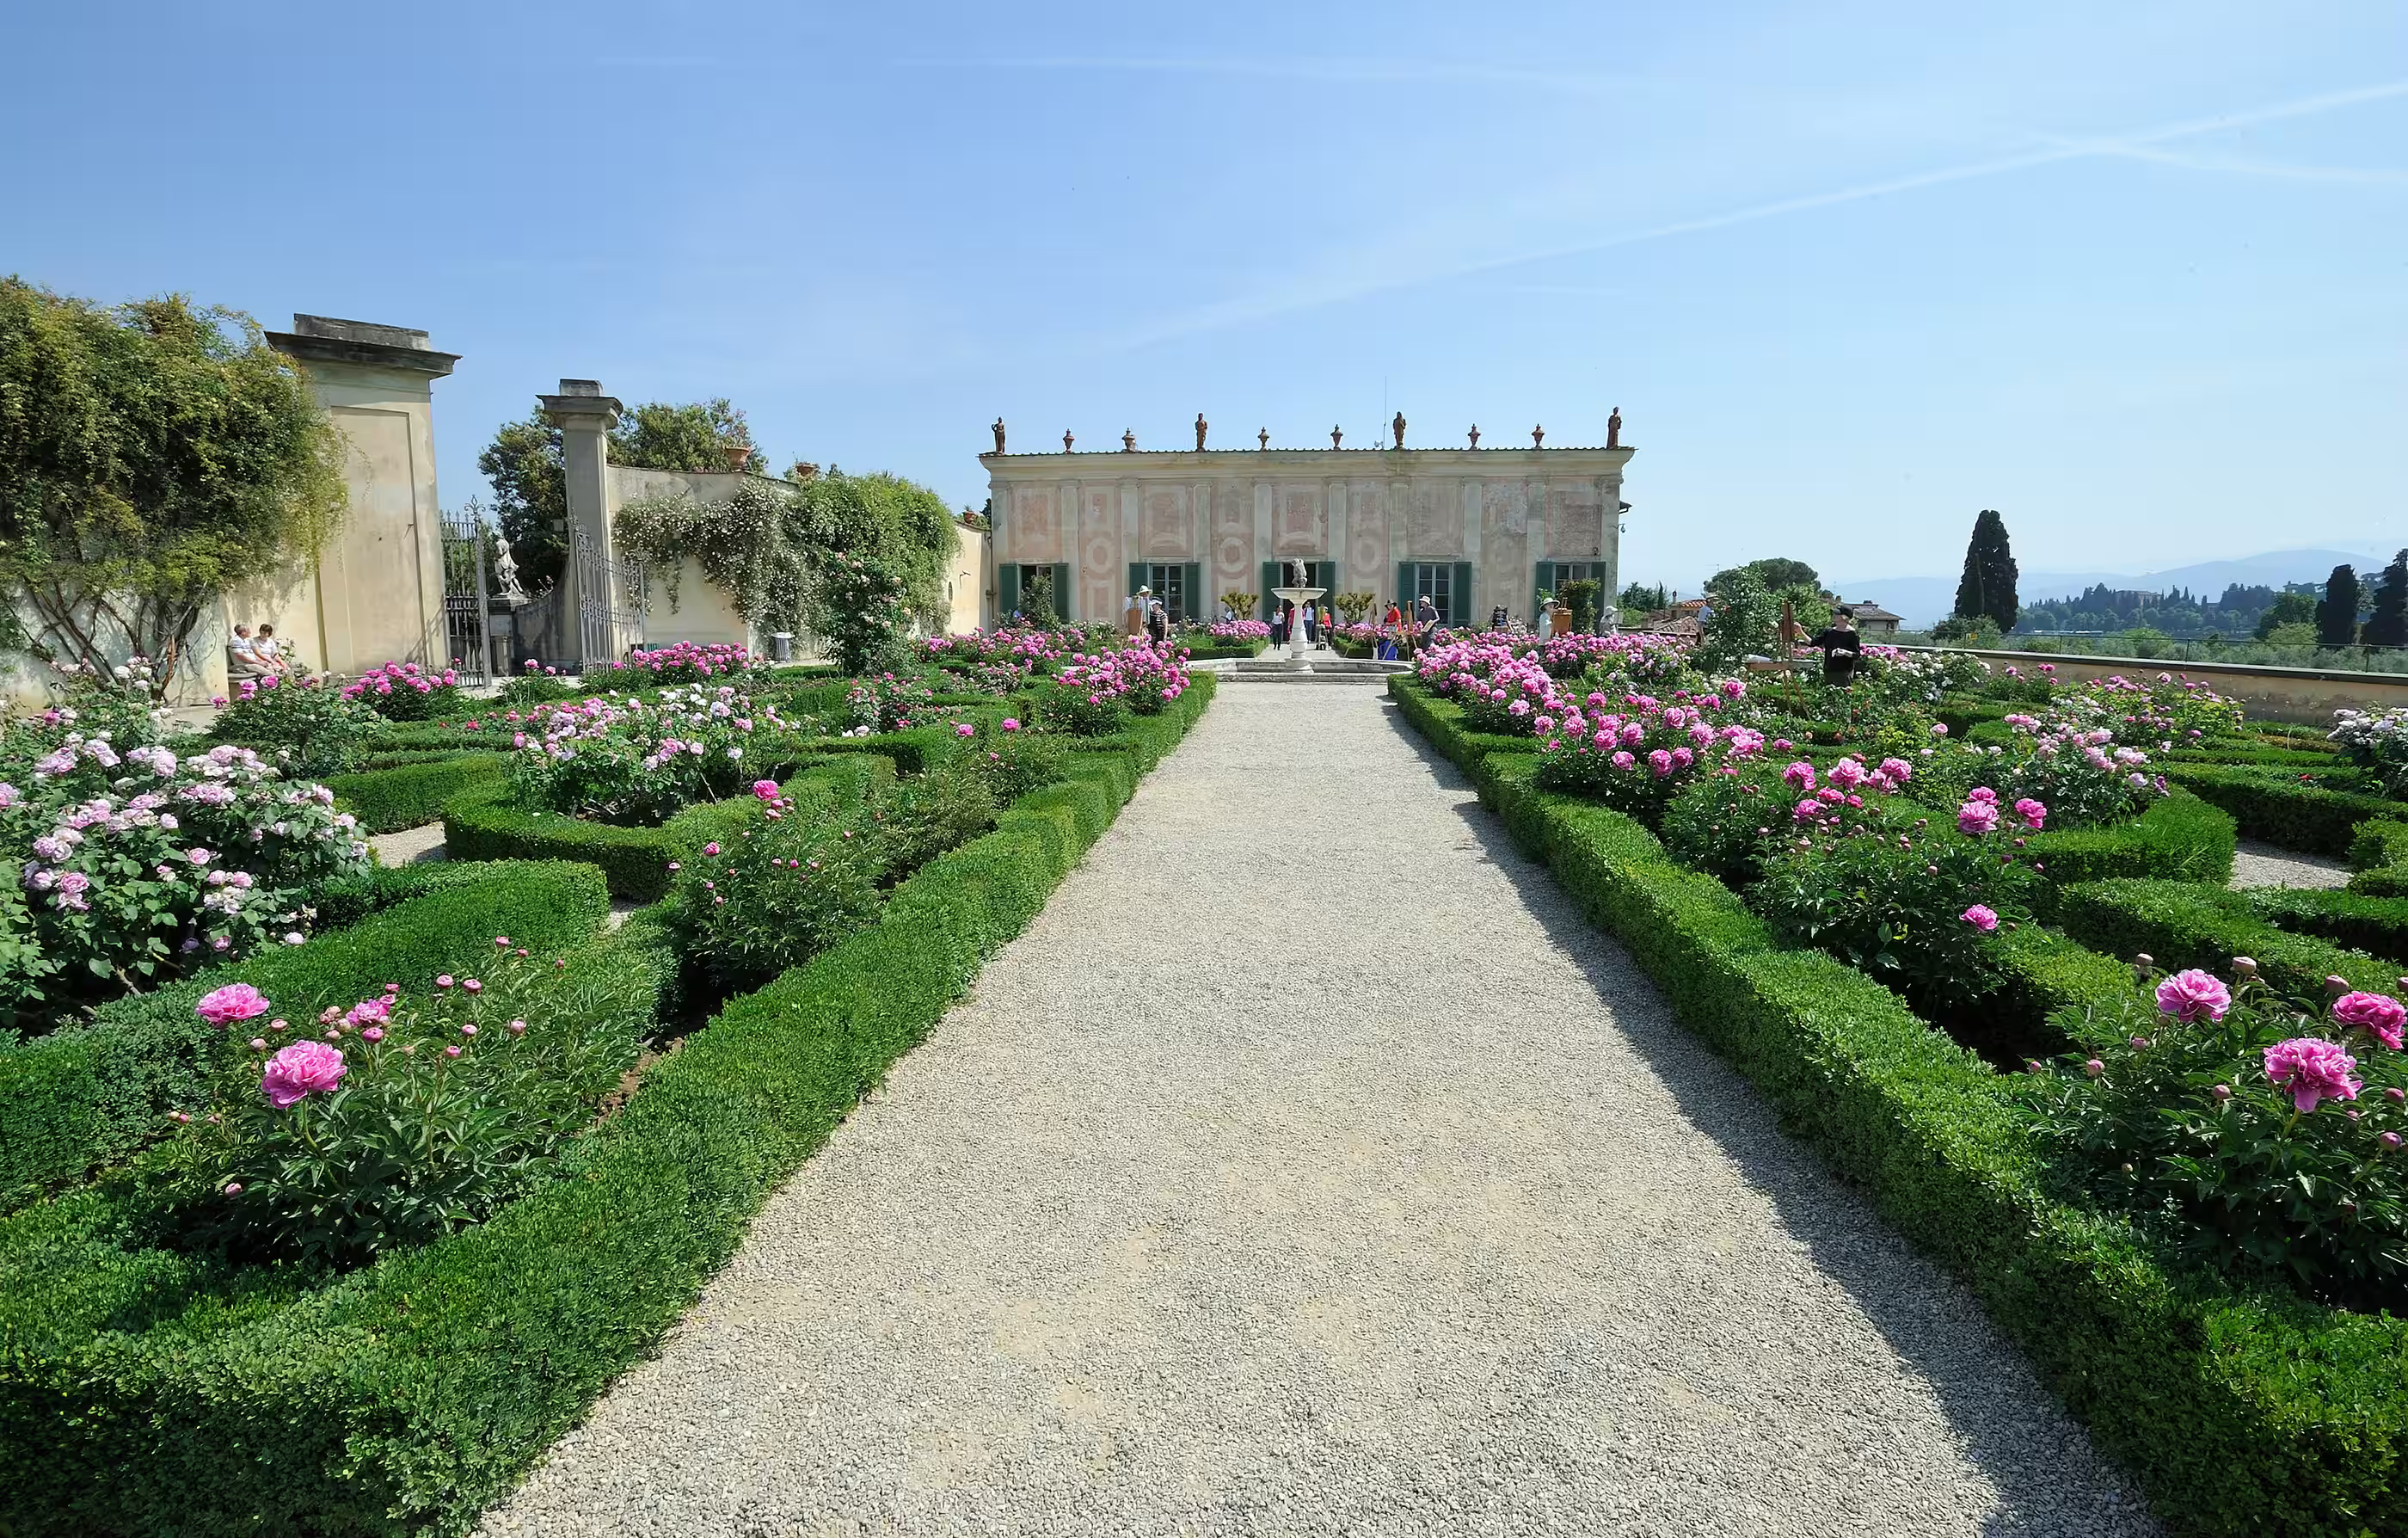 着博博利花园,是一片壮丽的绿地和露天博物馆,被许多欧洲宫廷奉为典范